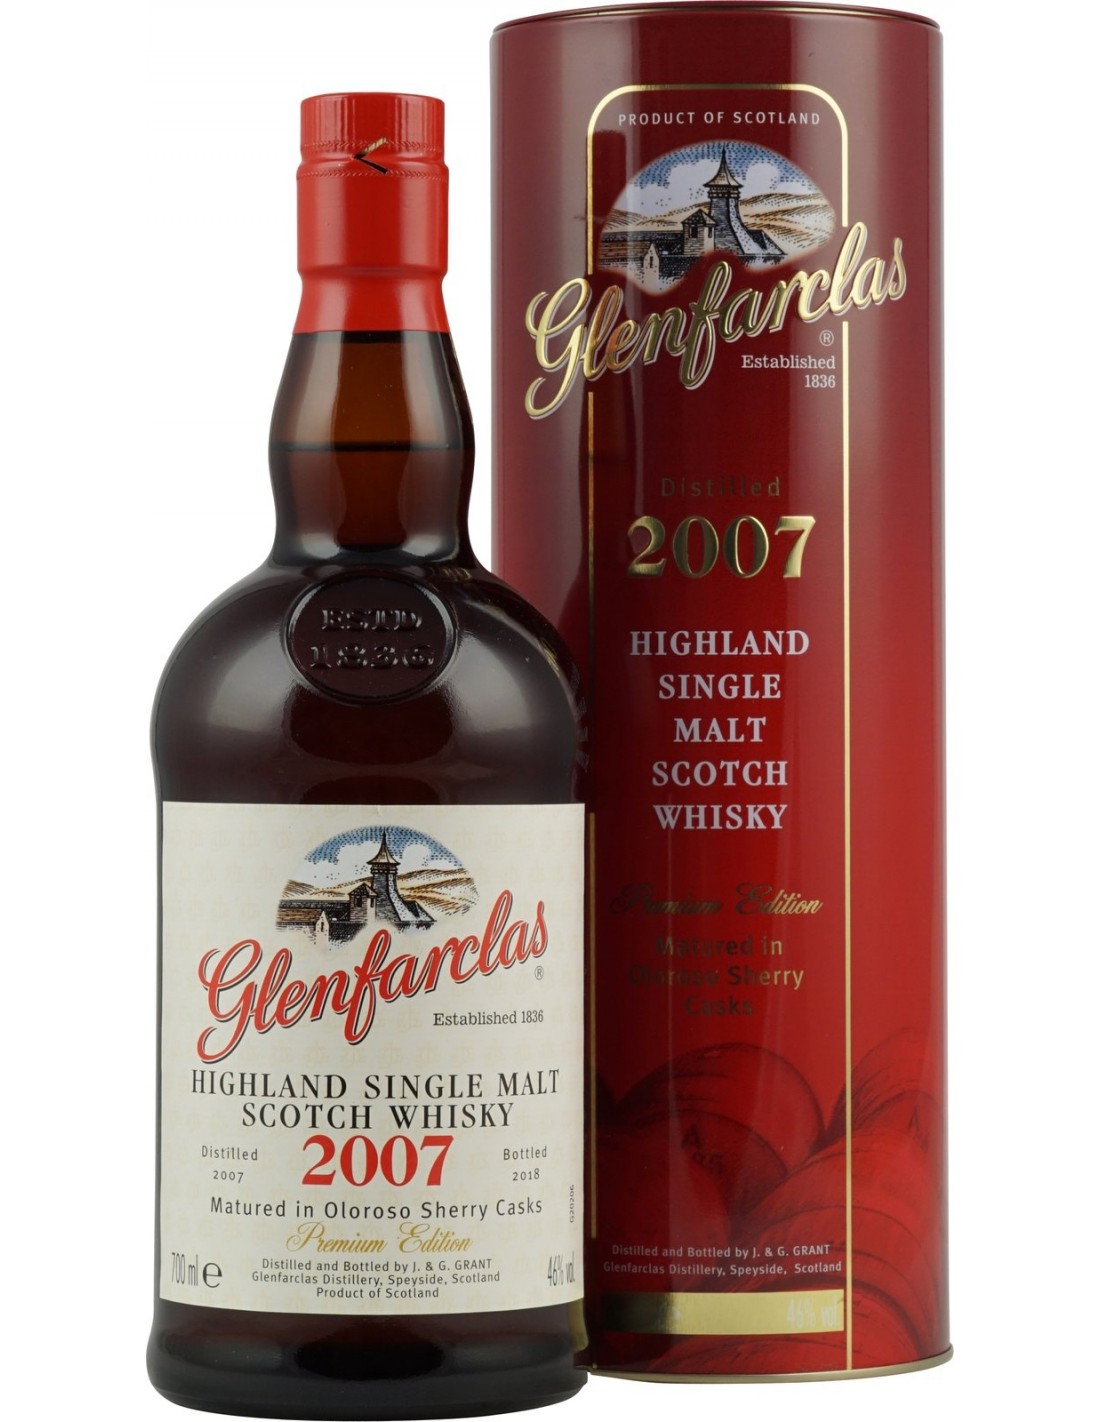 Whisky Glenfarclas Vintage, 2007, 43% alc., 0.7L, Scotia